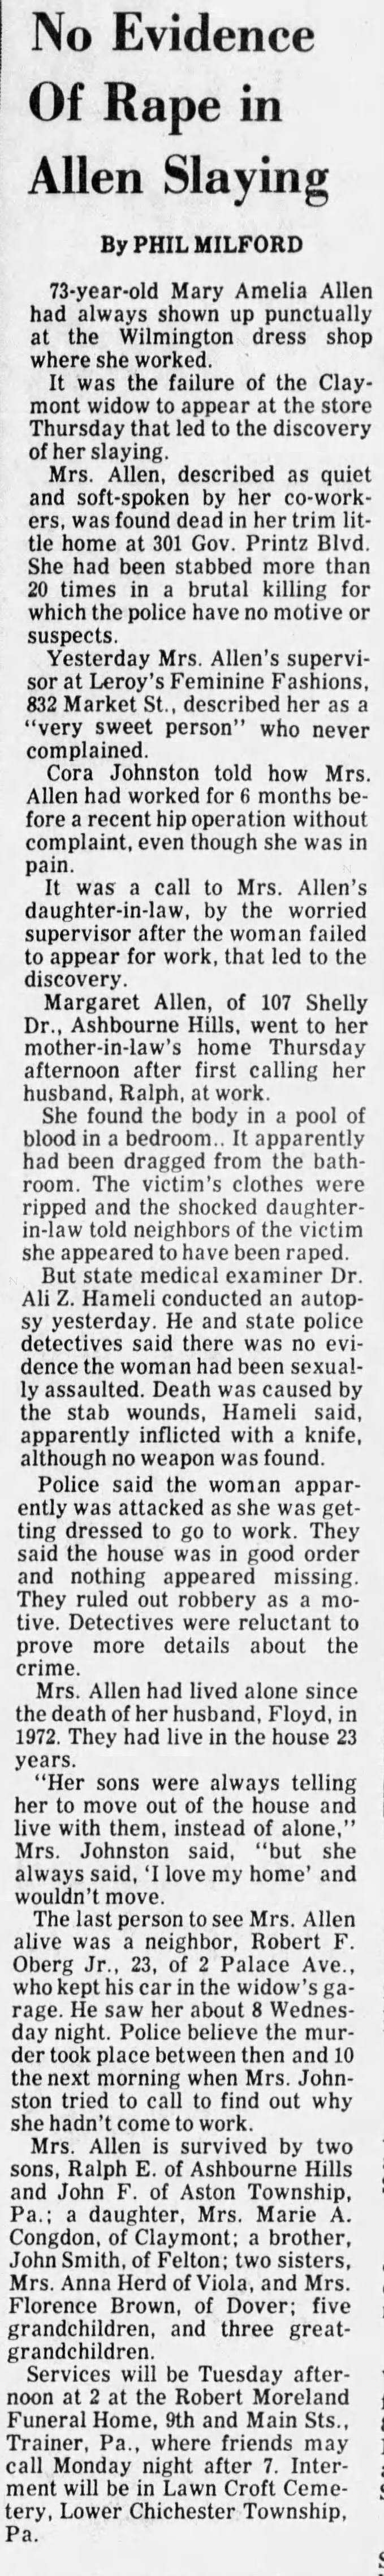 Murder of Mary Allen